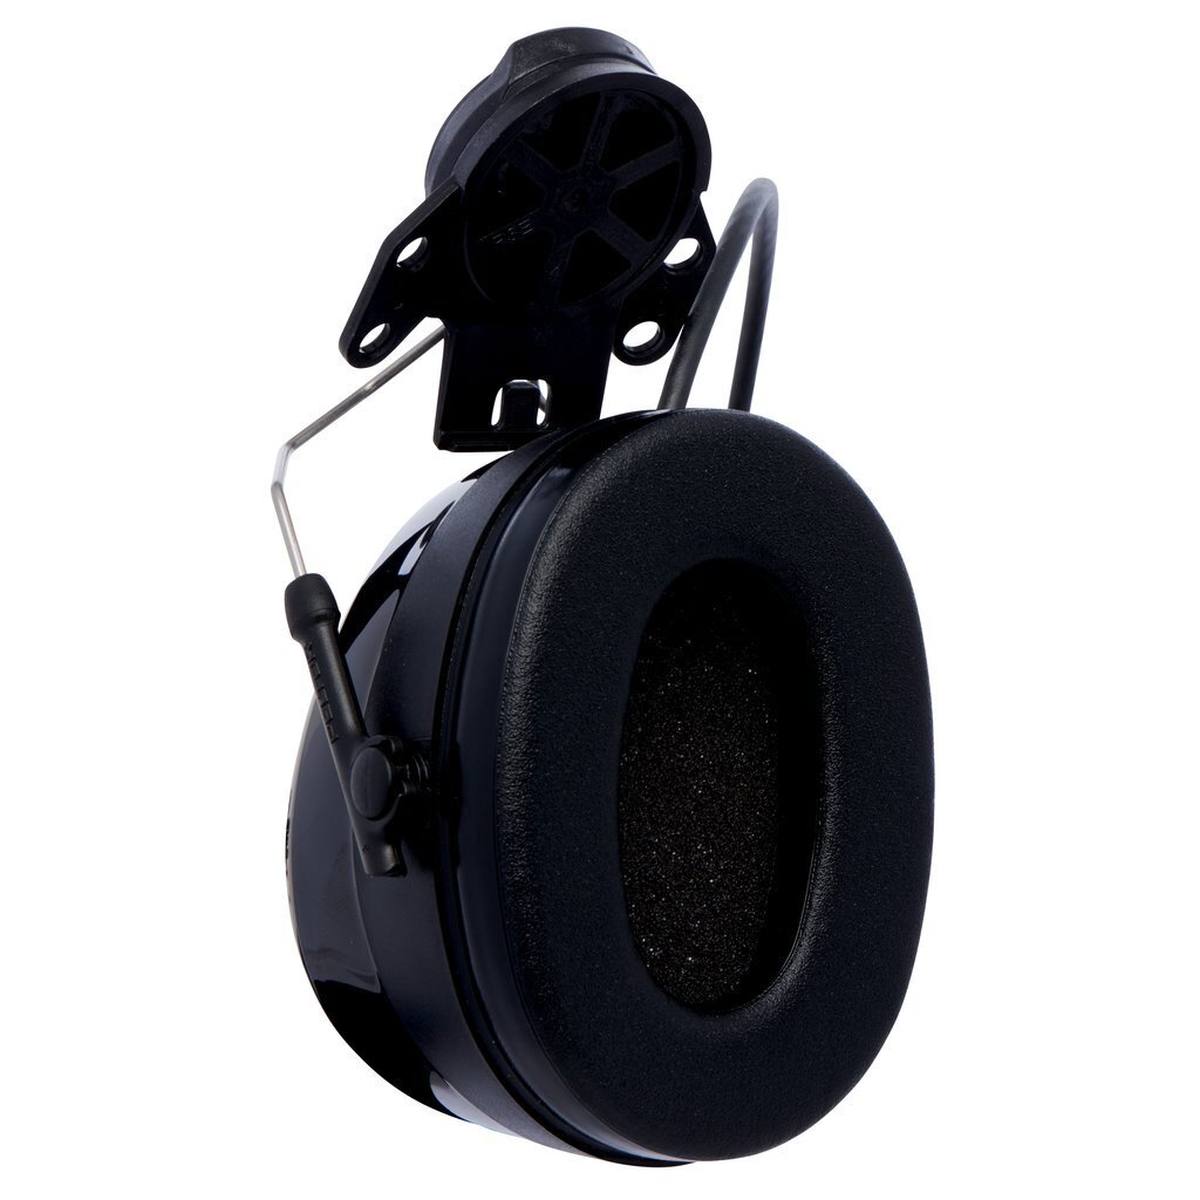 3M Peltor WorkTunes Pro FM Radio Gehörschutz Headset, Helmbefestigung, schwarz